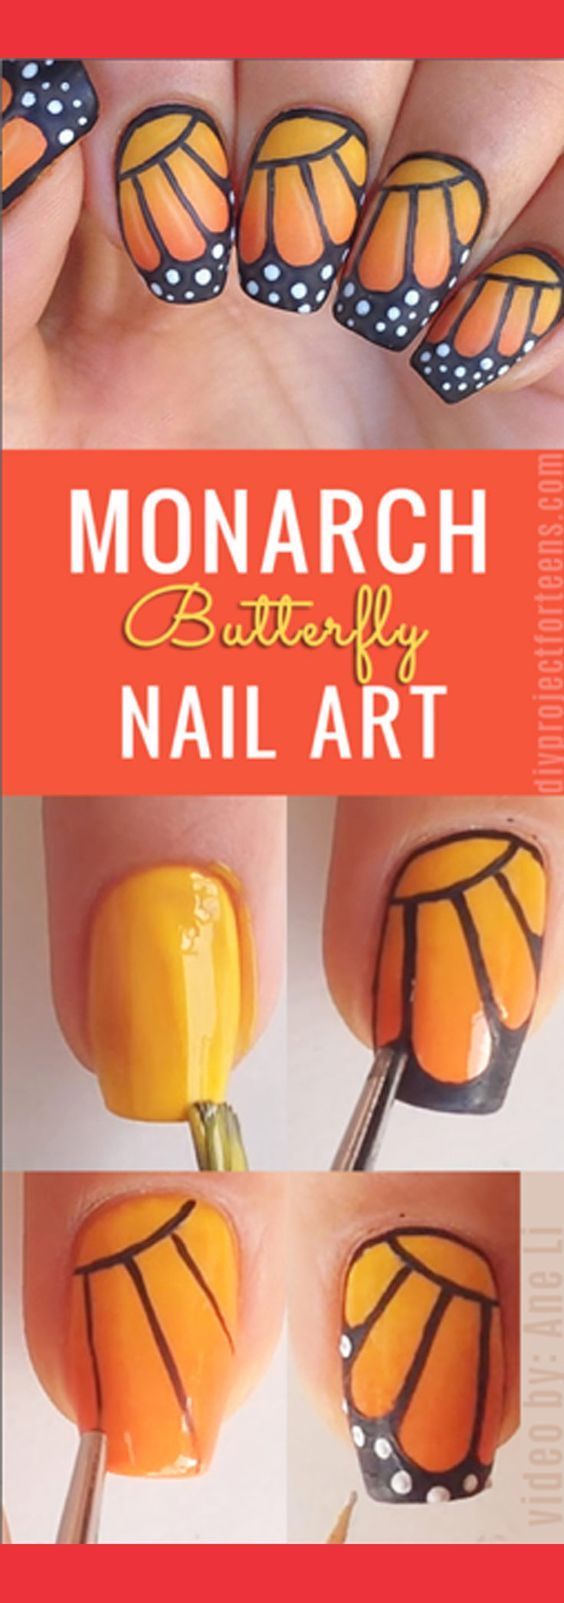 Monarch butterfly nail art tutorials